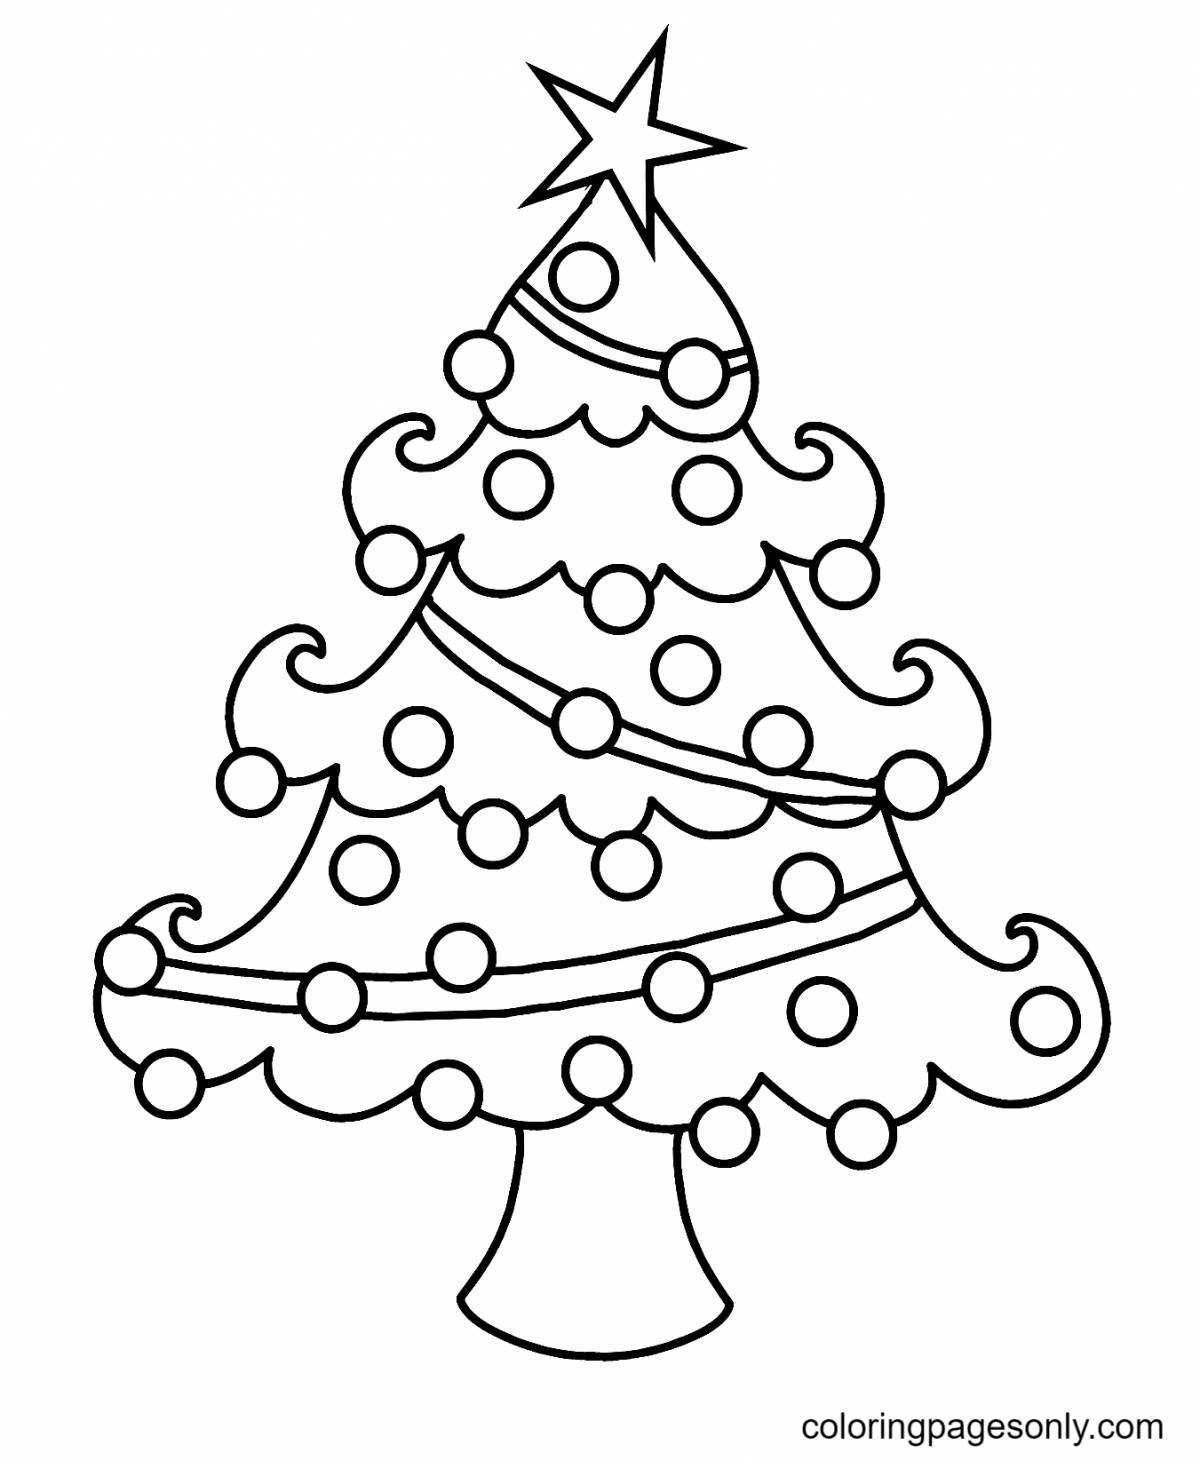 Раскраска веселая новогодняя елка для детей 3-4 лет